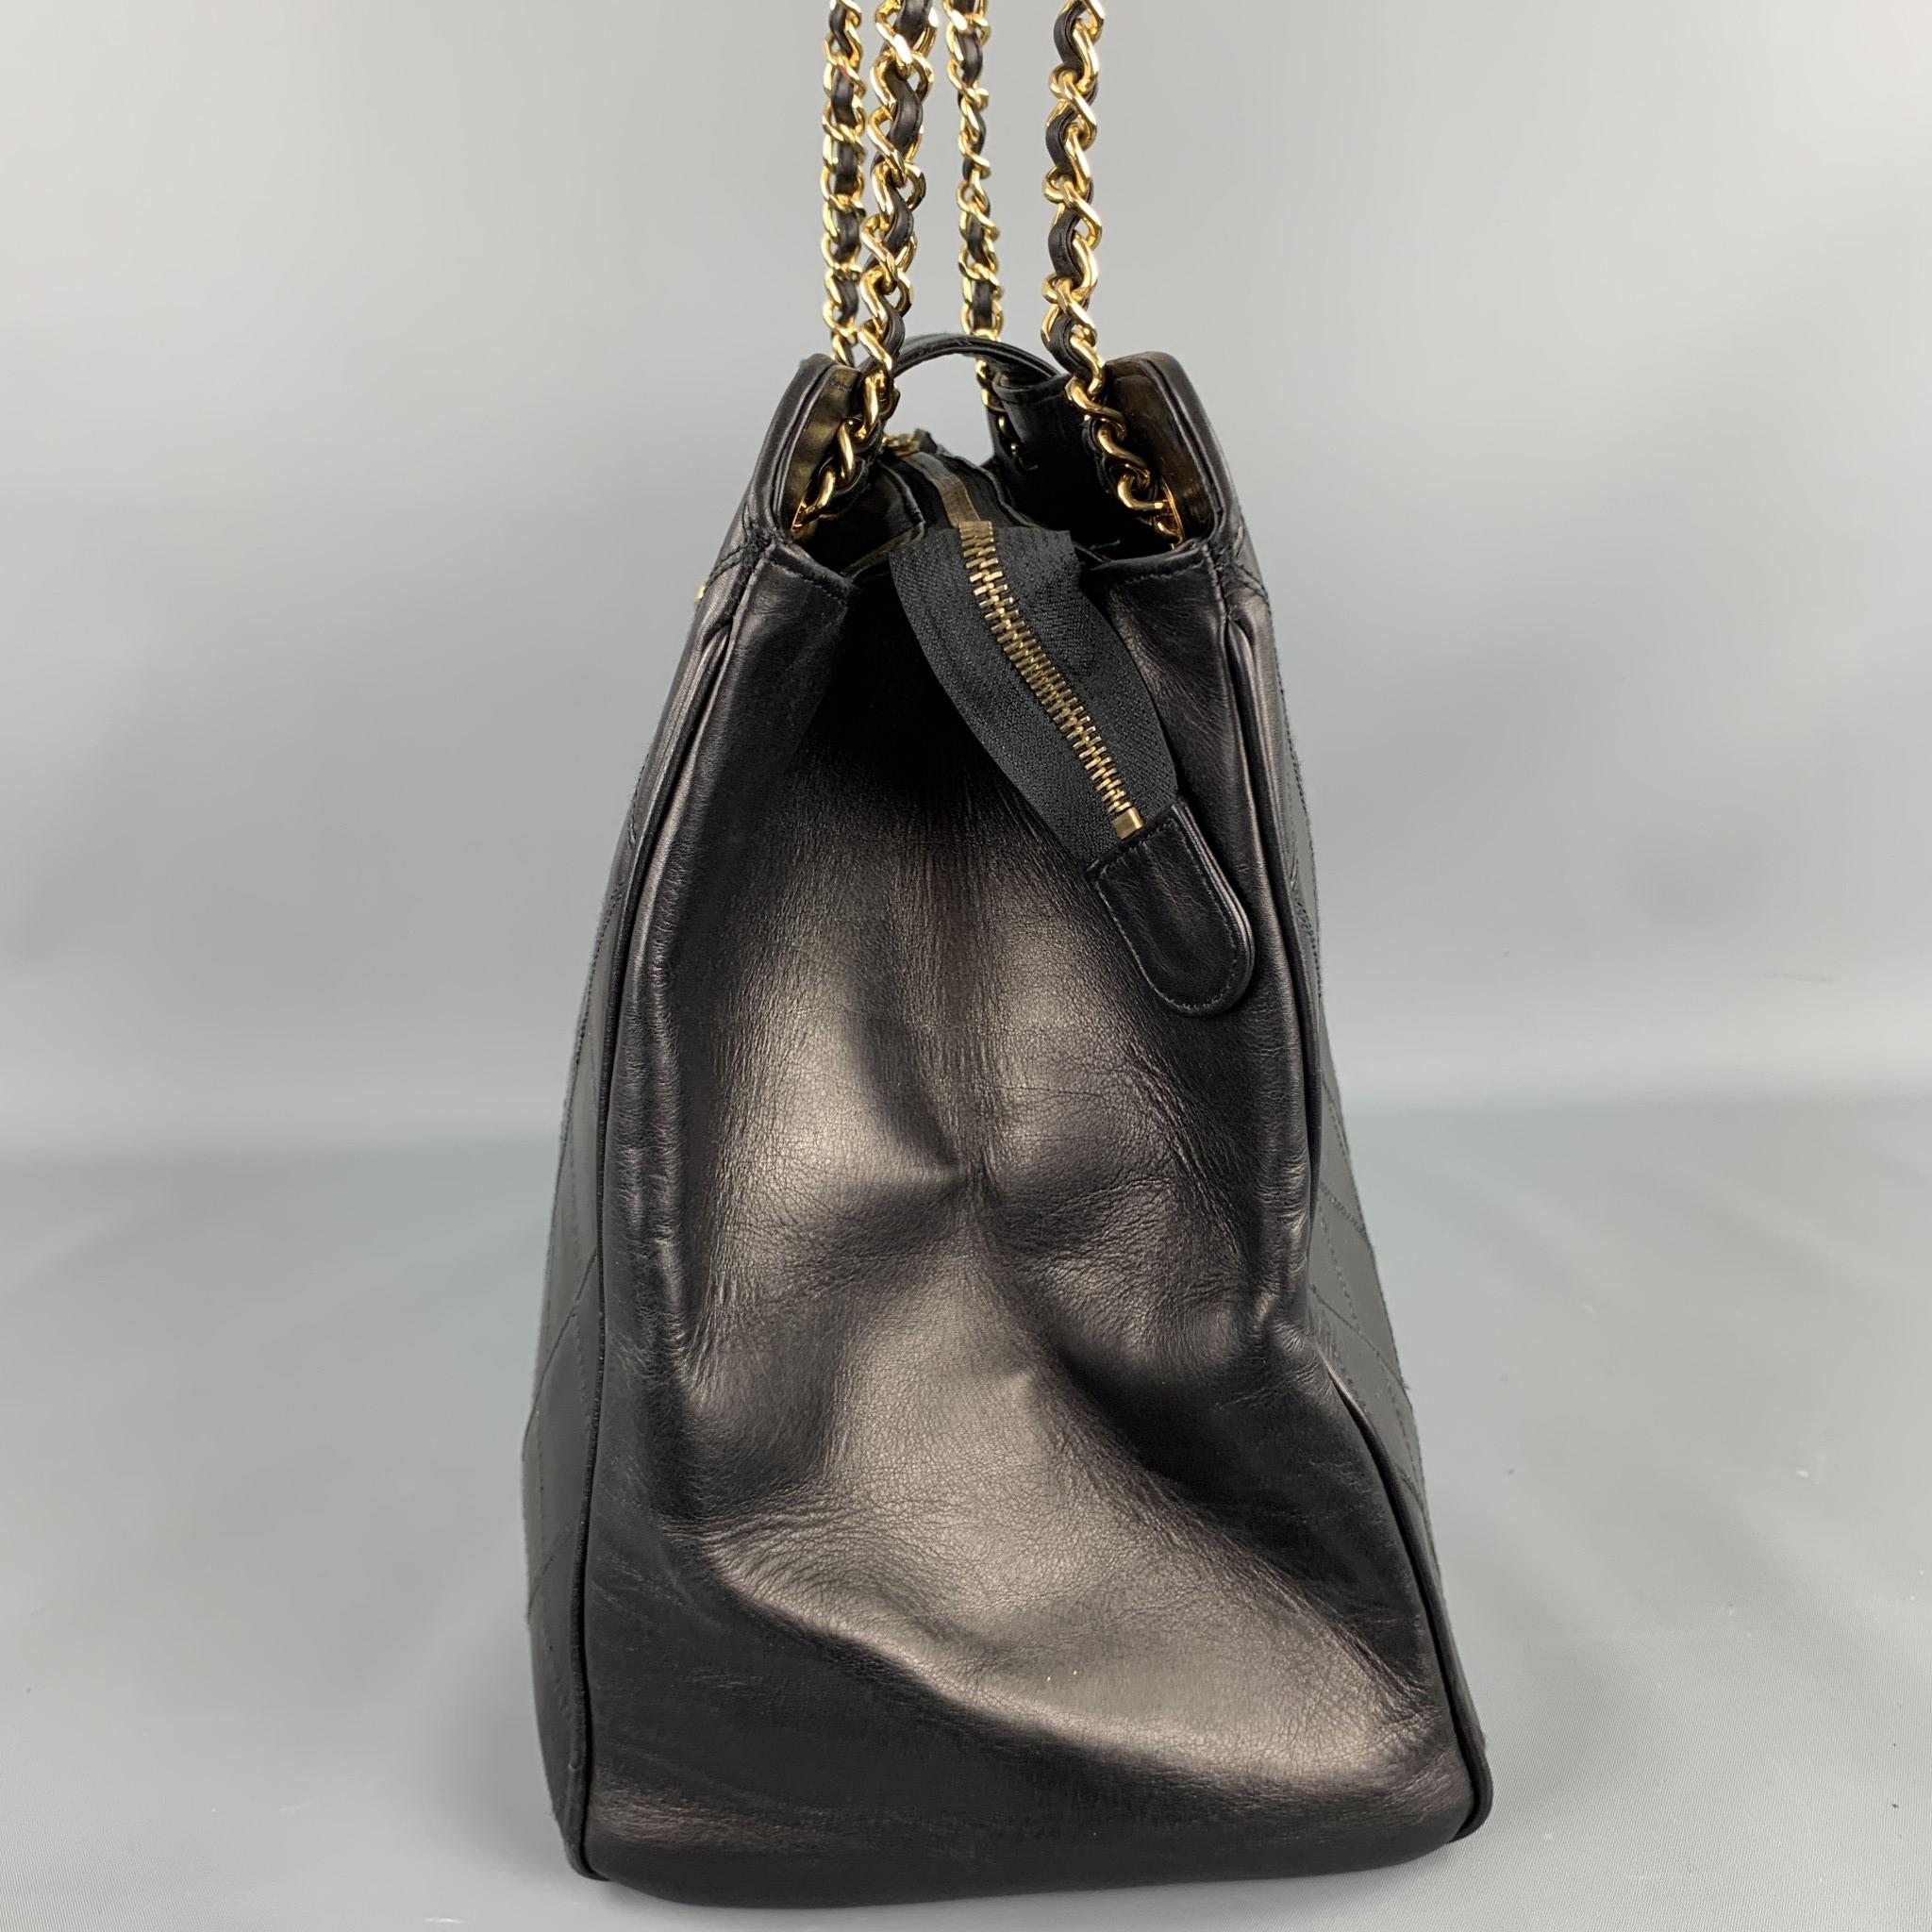 Women's Vintage CHANEL Supermodel Jumbo XL Bag Black Quilted Leather Shoulder Handbag